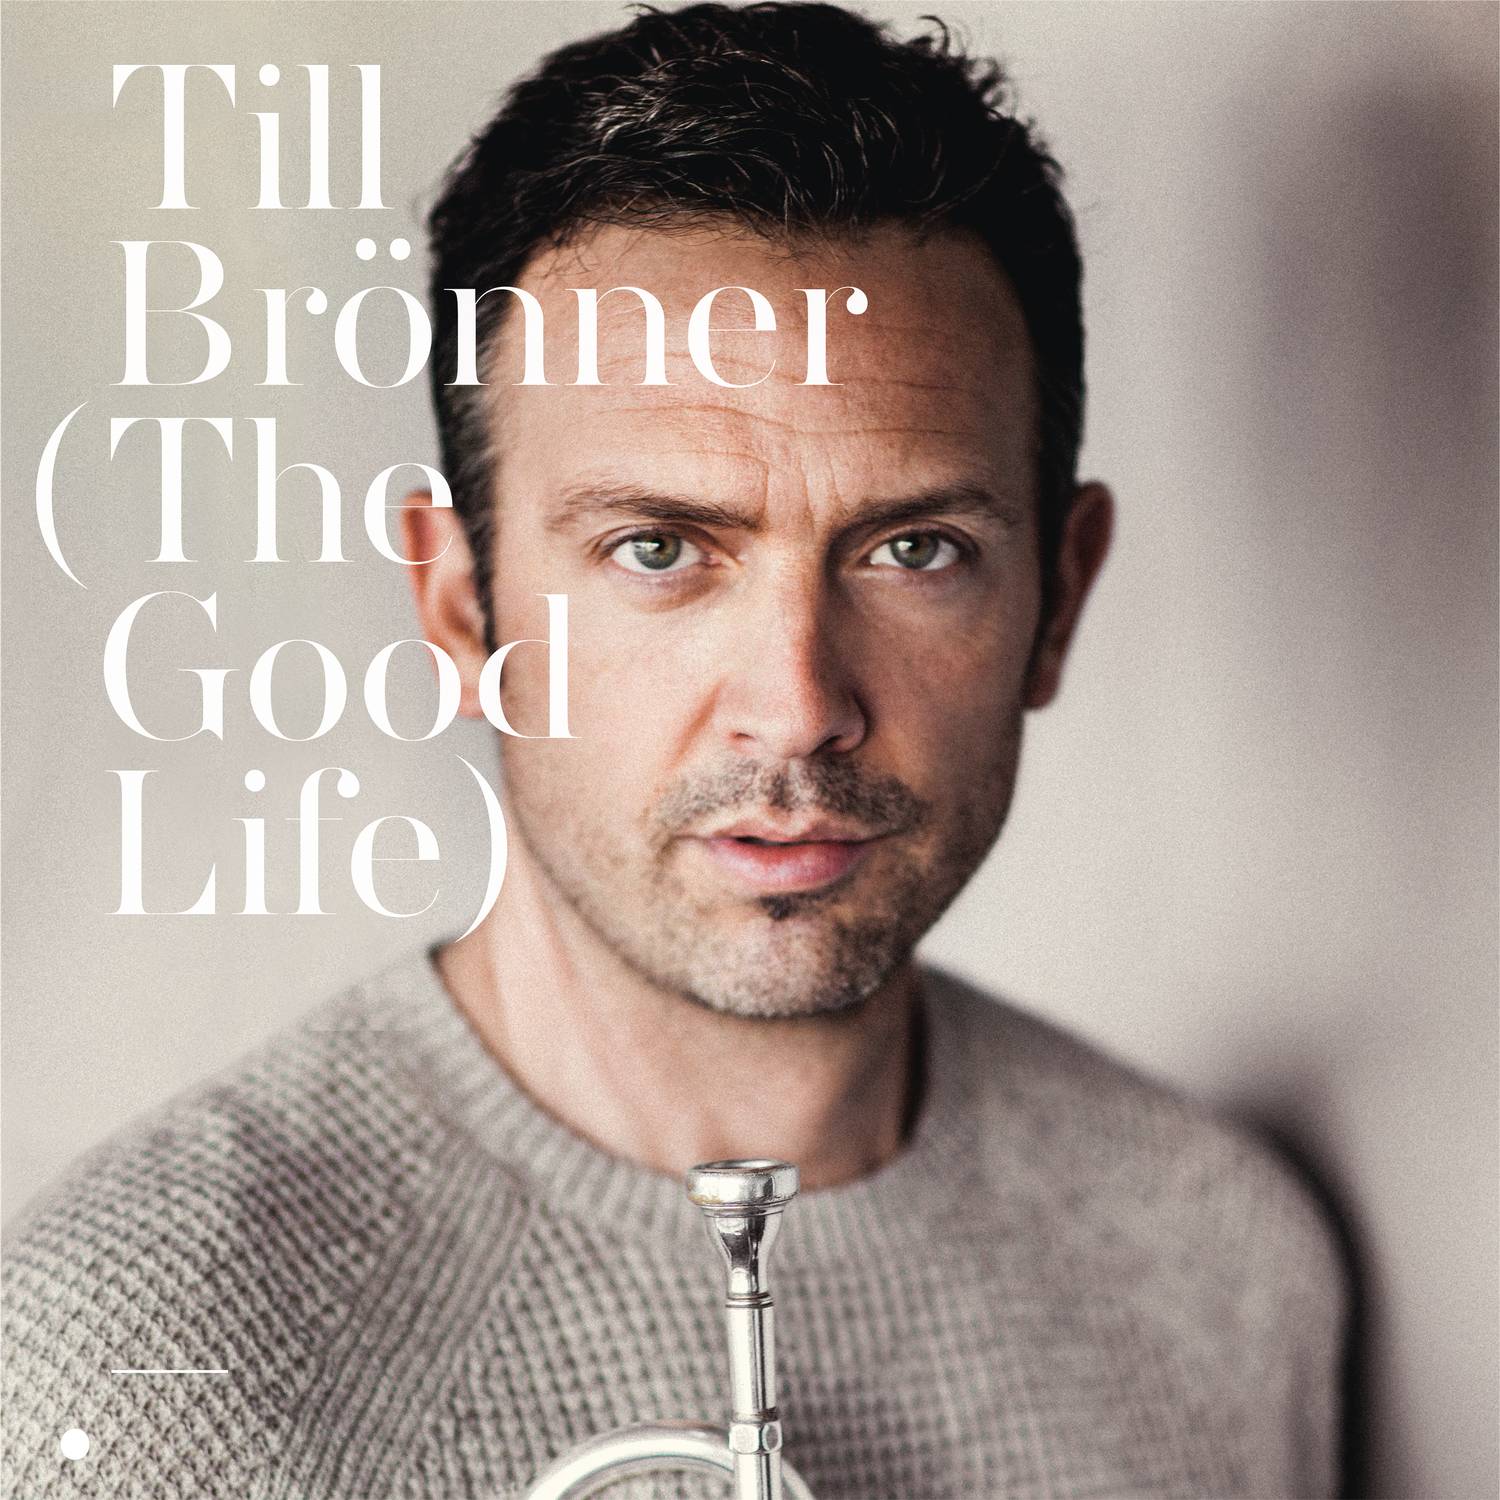 Till Bronner - The Good Life (2016) [AcousticSounds FLAC 24bit/96kHz]